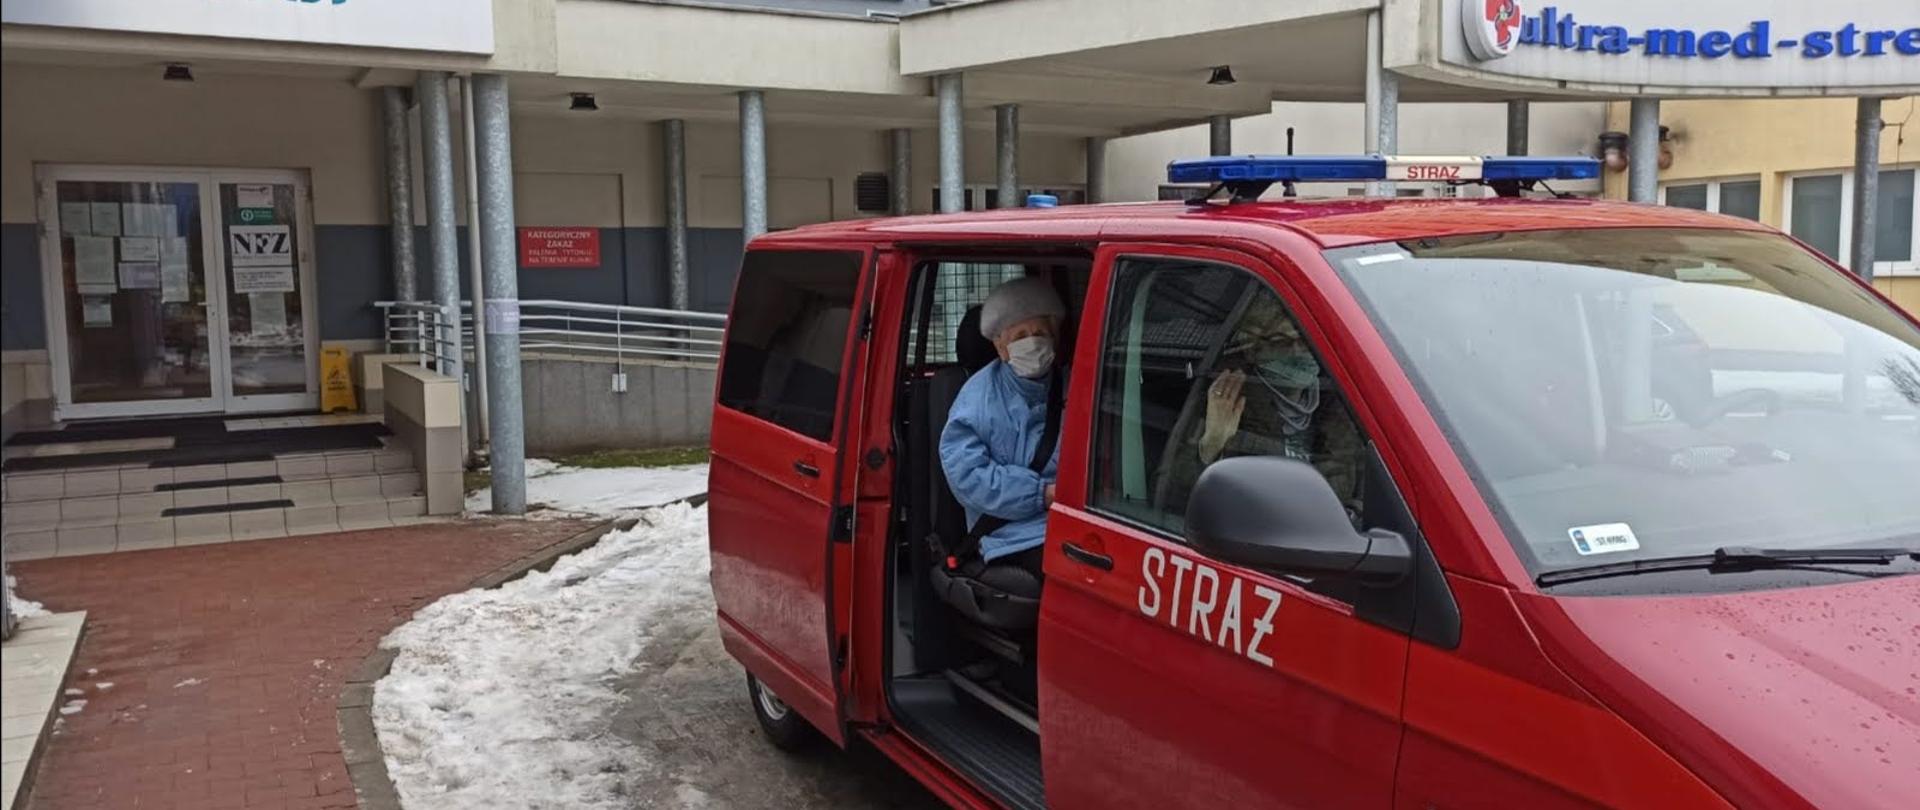 Dwie starsze Panie siedzące w samochodzie strażackim lekkim kwatermistrzowskim na tle ośrodka zdrowia